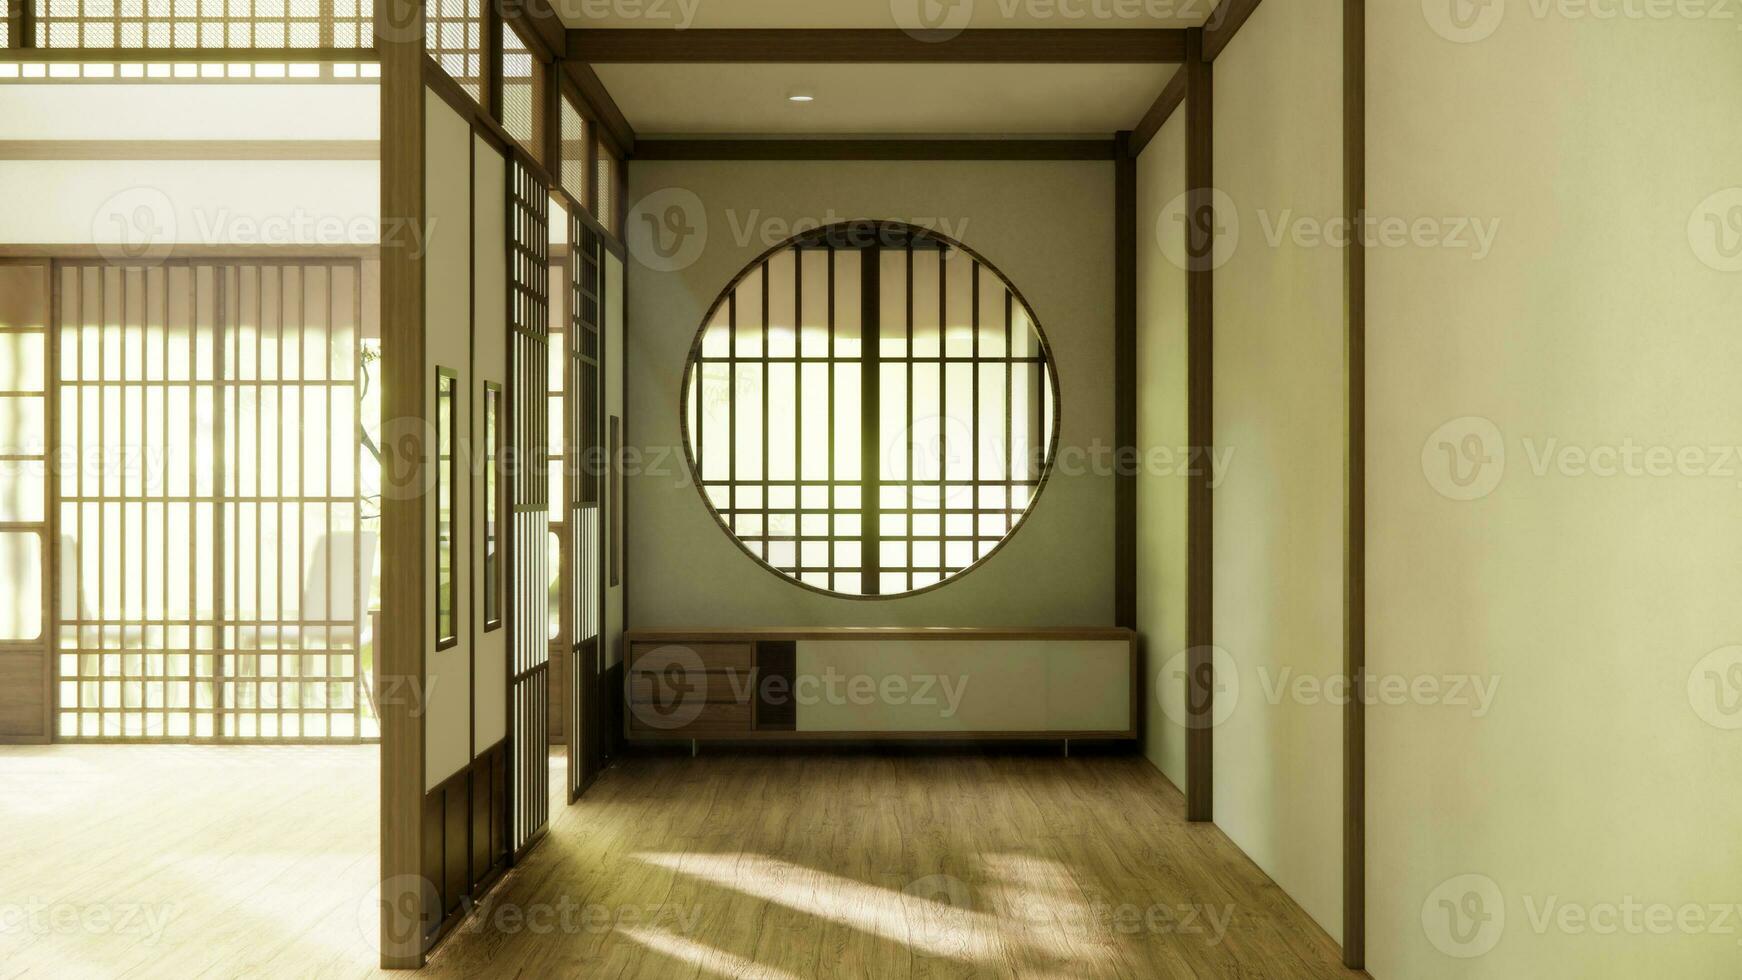 Consiglio dei ministri nel corridoio pulito giapponese minimalista camera interno. foto